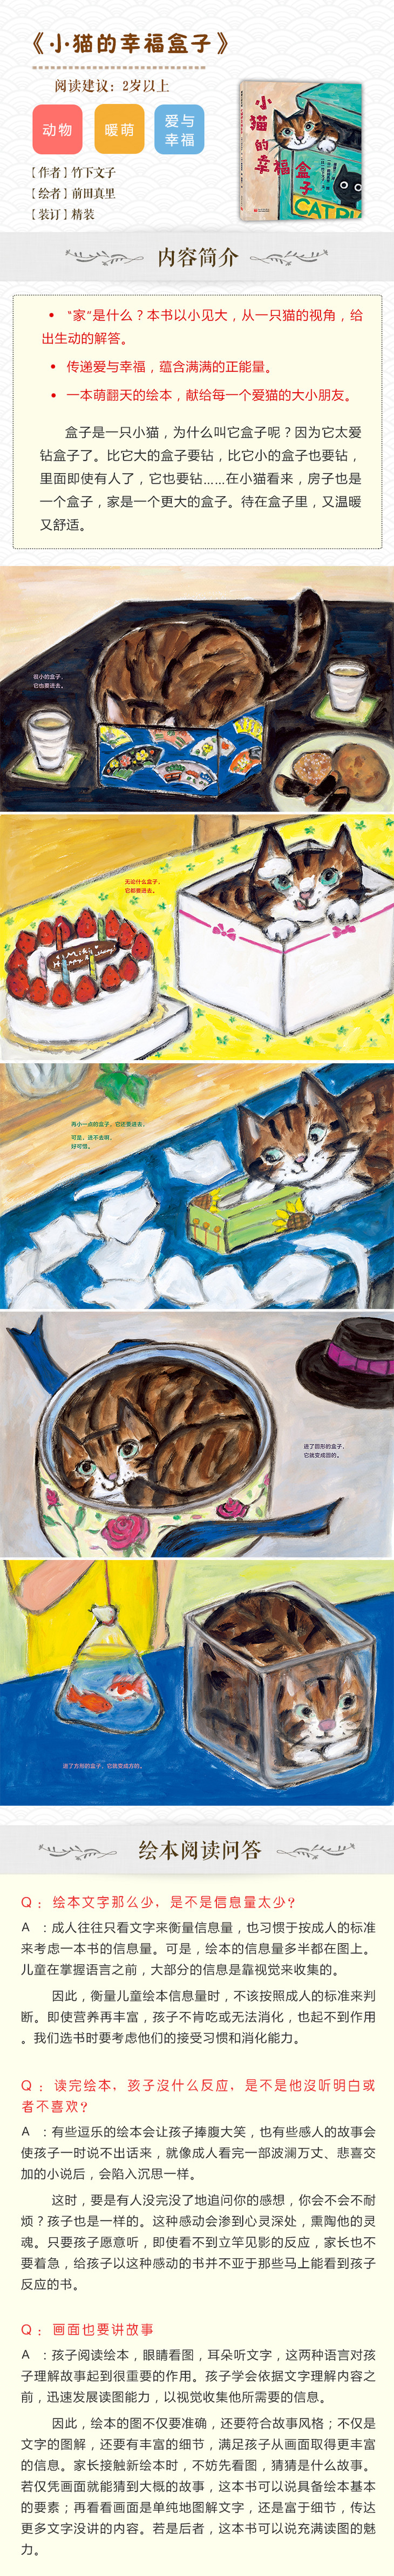 小猫的幸福盒子一本萌翻天的绘本献给每一个爱猫的大小朋友